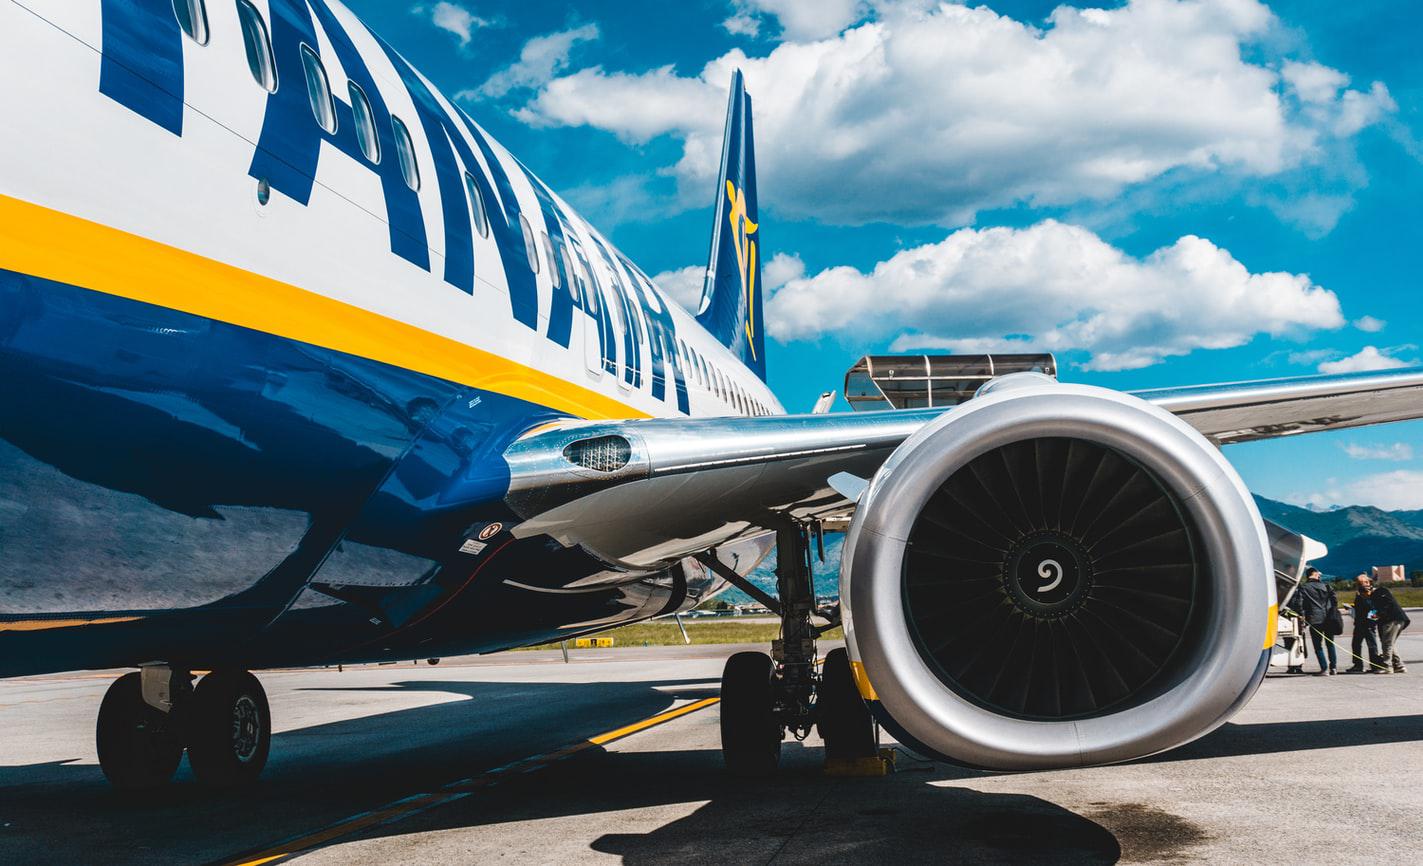 Η Ryanair εντόπισε εξαρτήματα με πλαστά έγγραφα σε δύο κινητήρες αεροσκαφών της